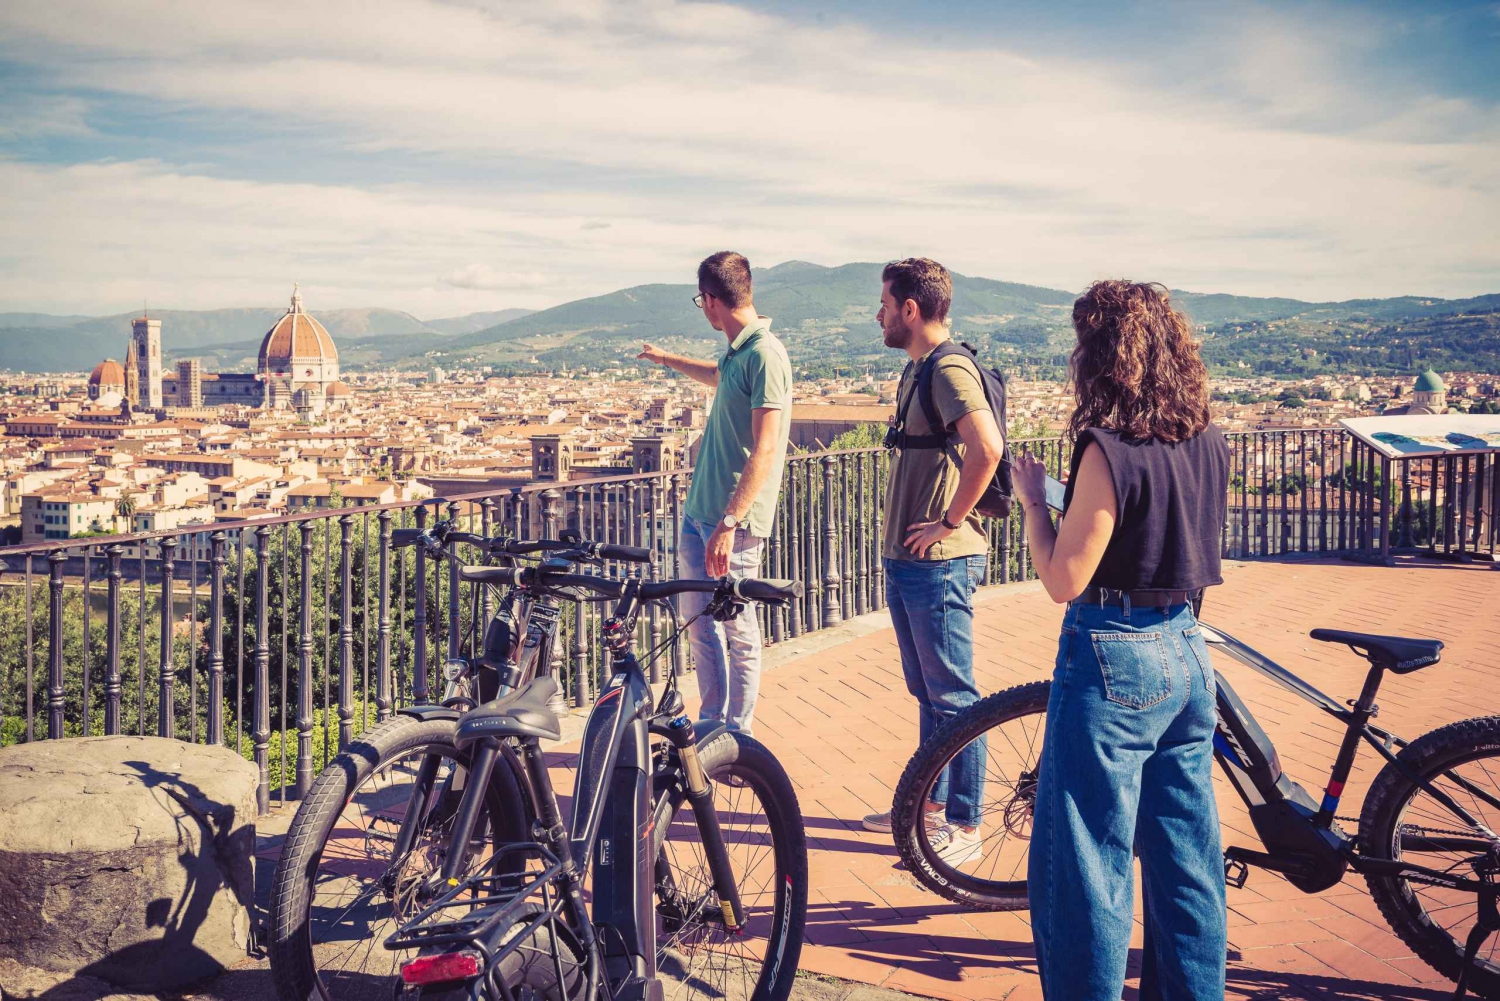 Florencia: Visita guiada en bici eléctrica con helado